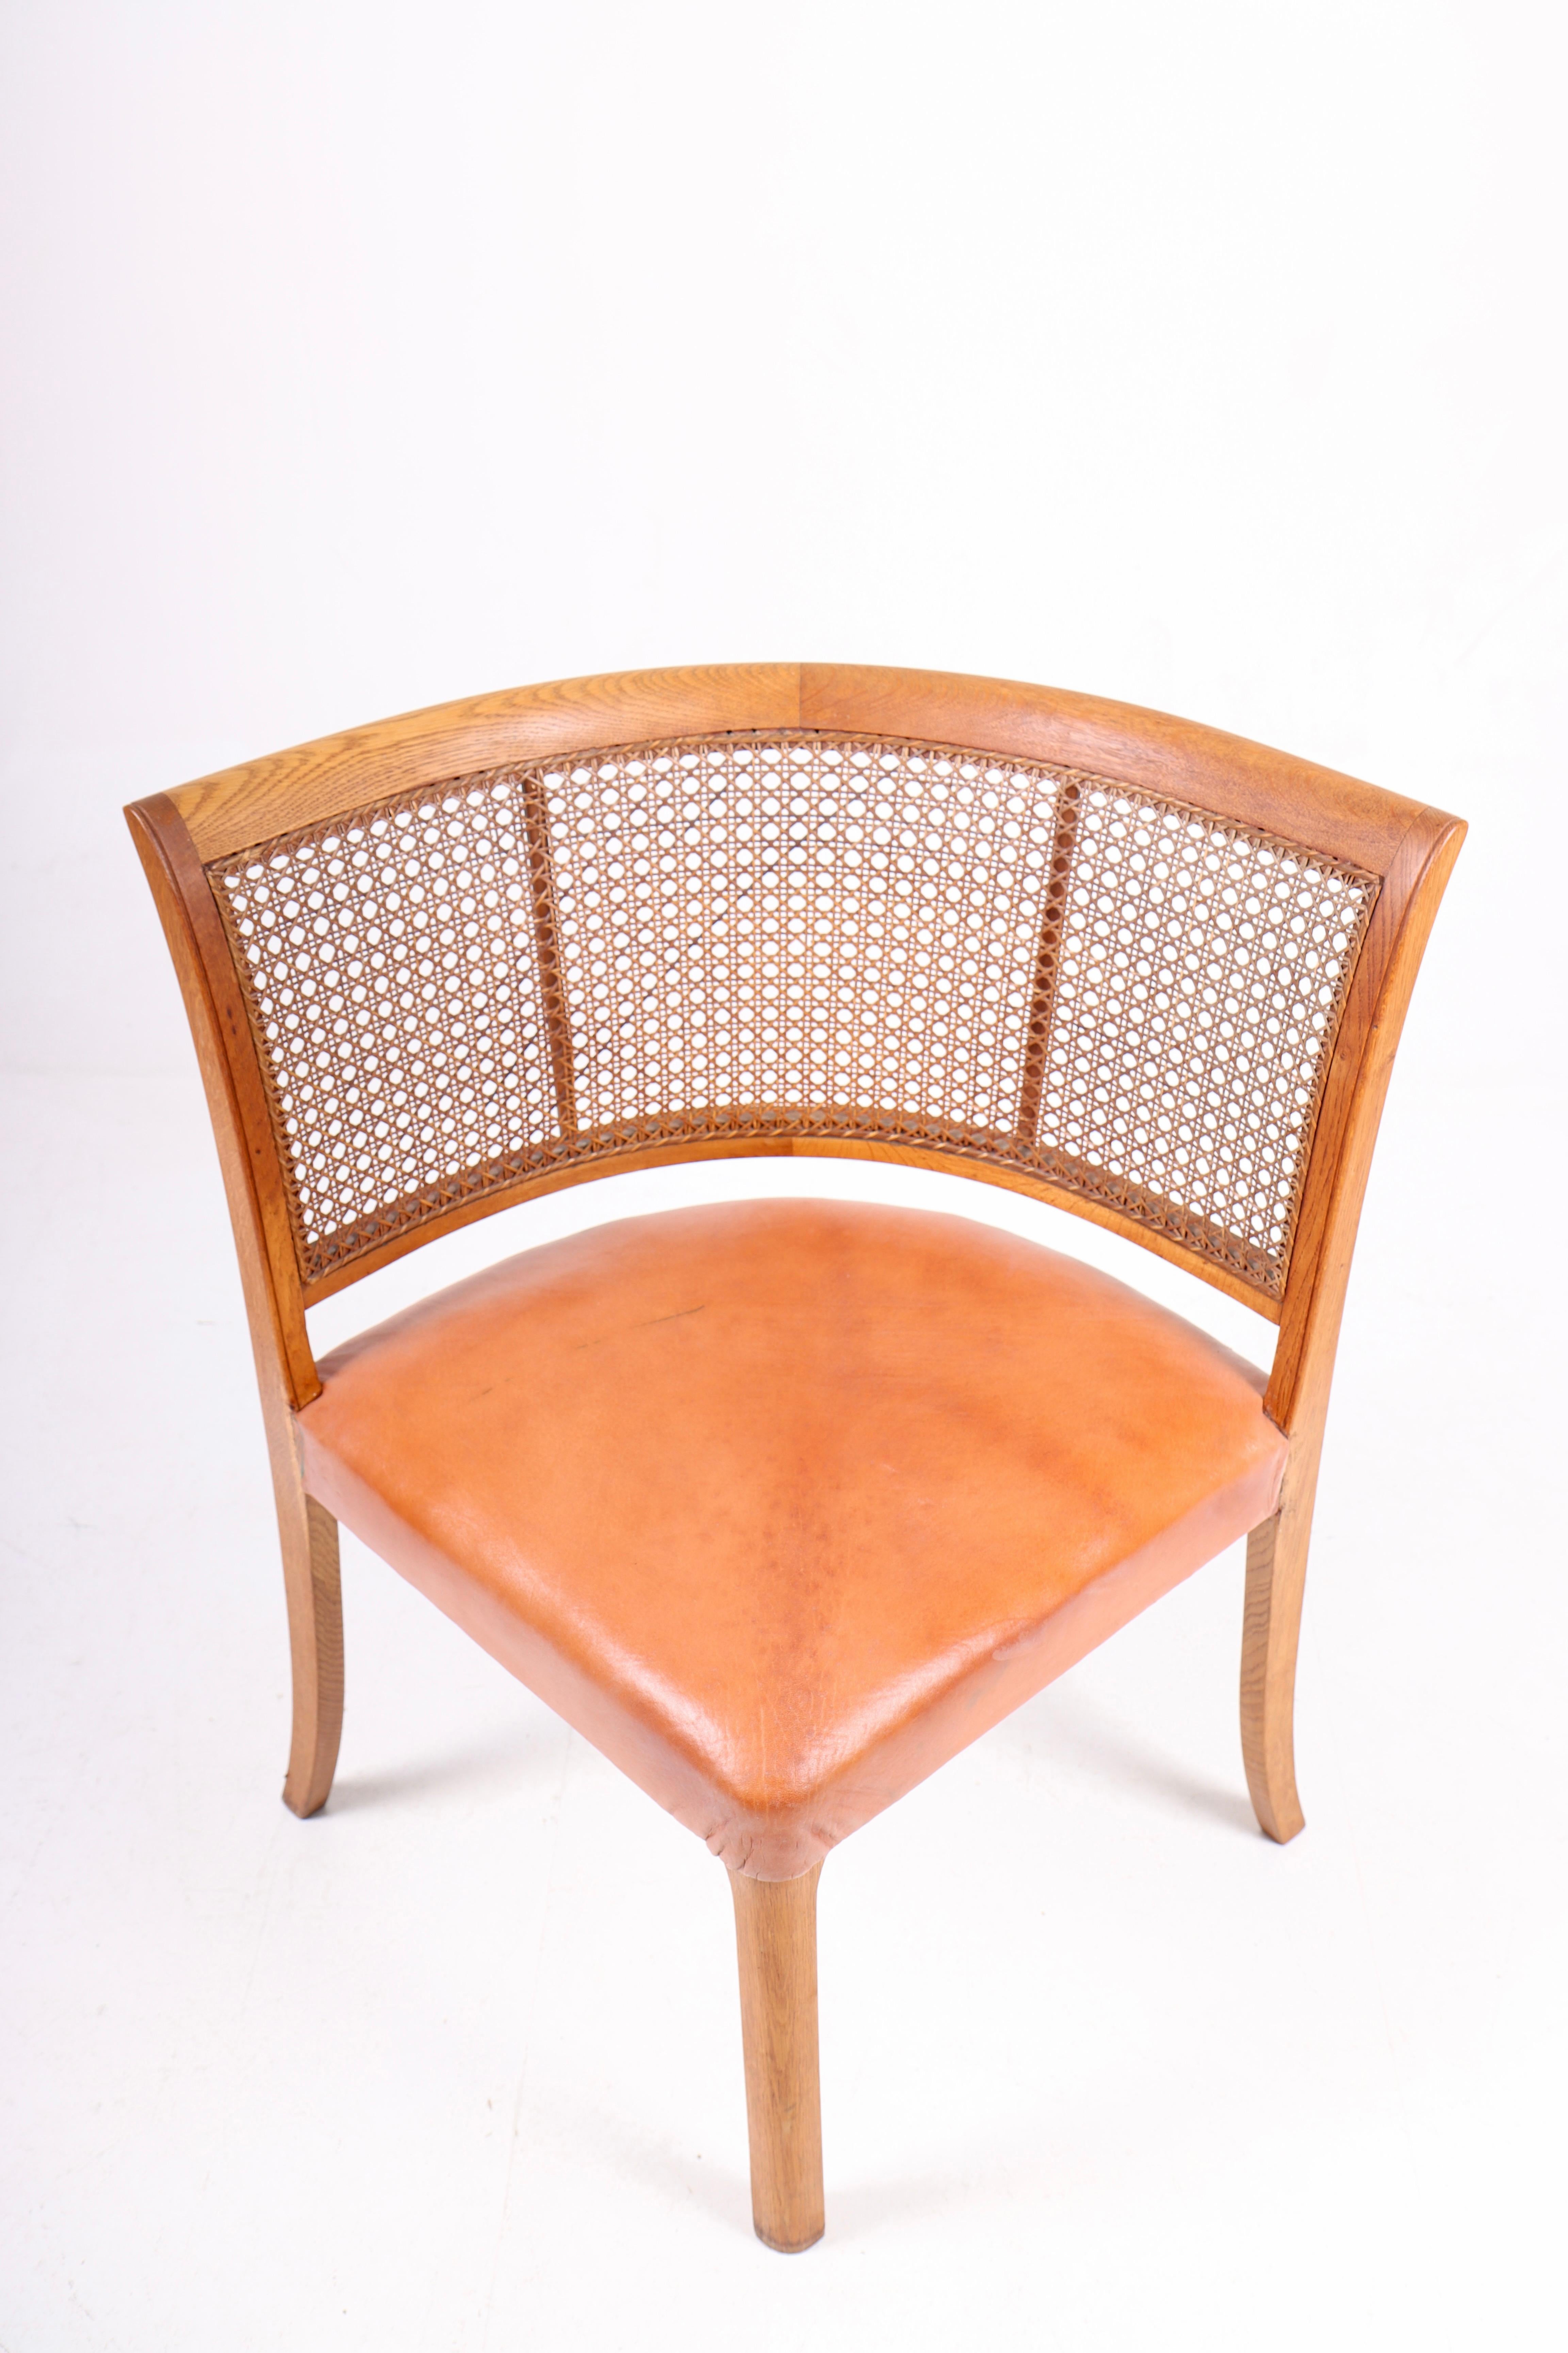 Scandinavian Modern Danish Side Chair in Oak and Cognac Leather, 1940s